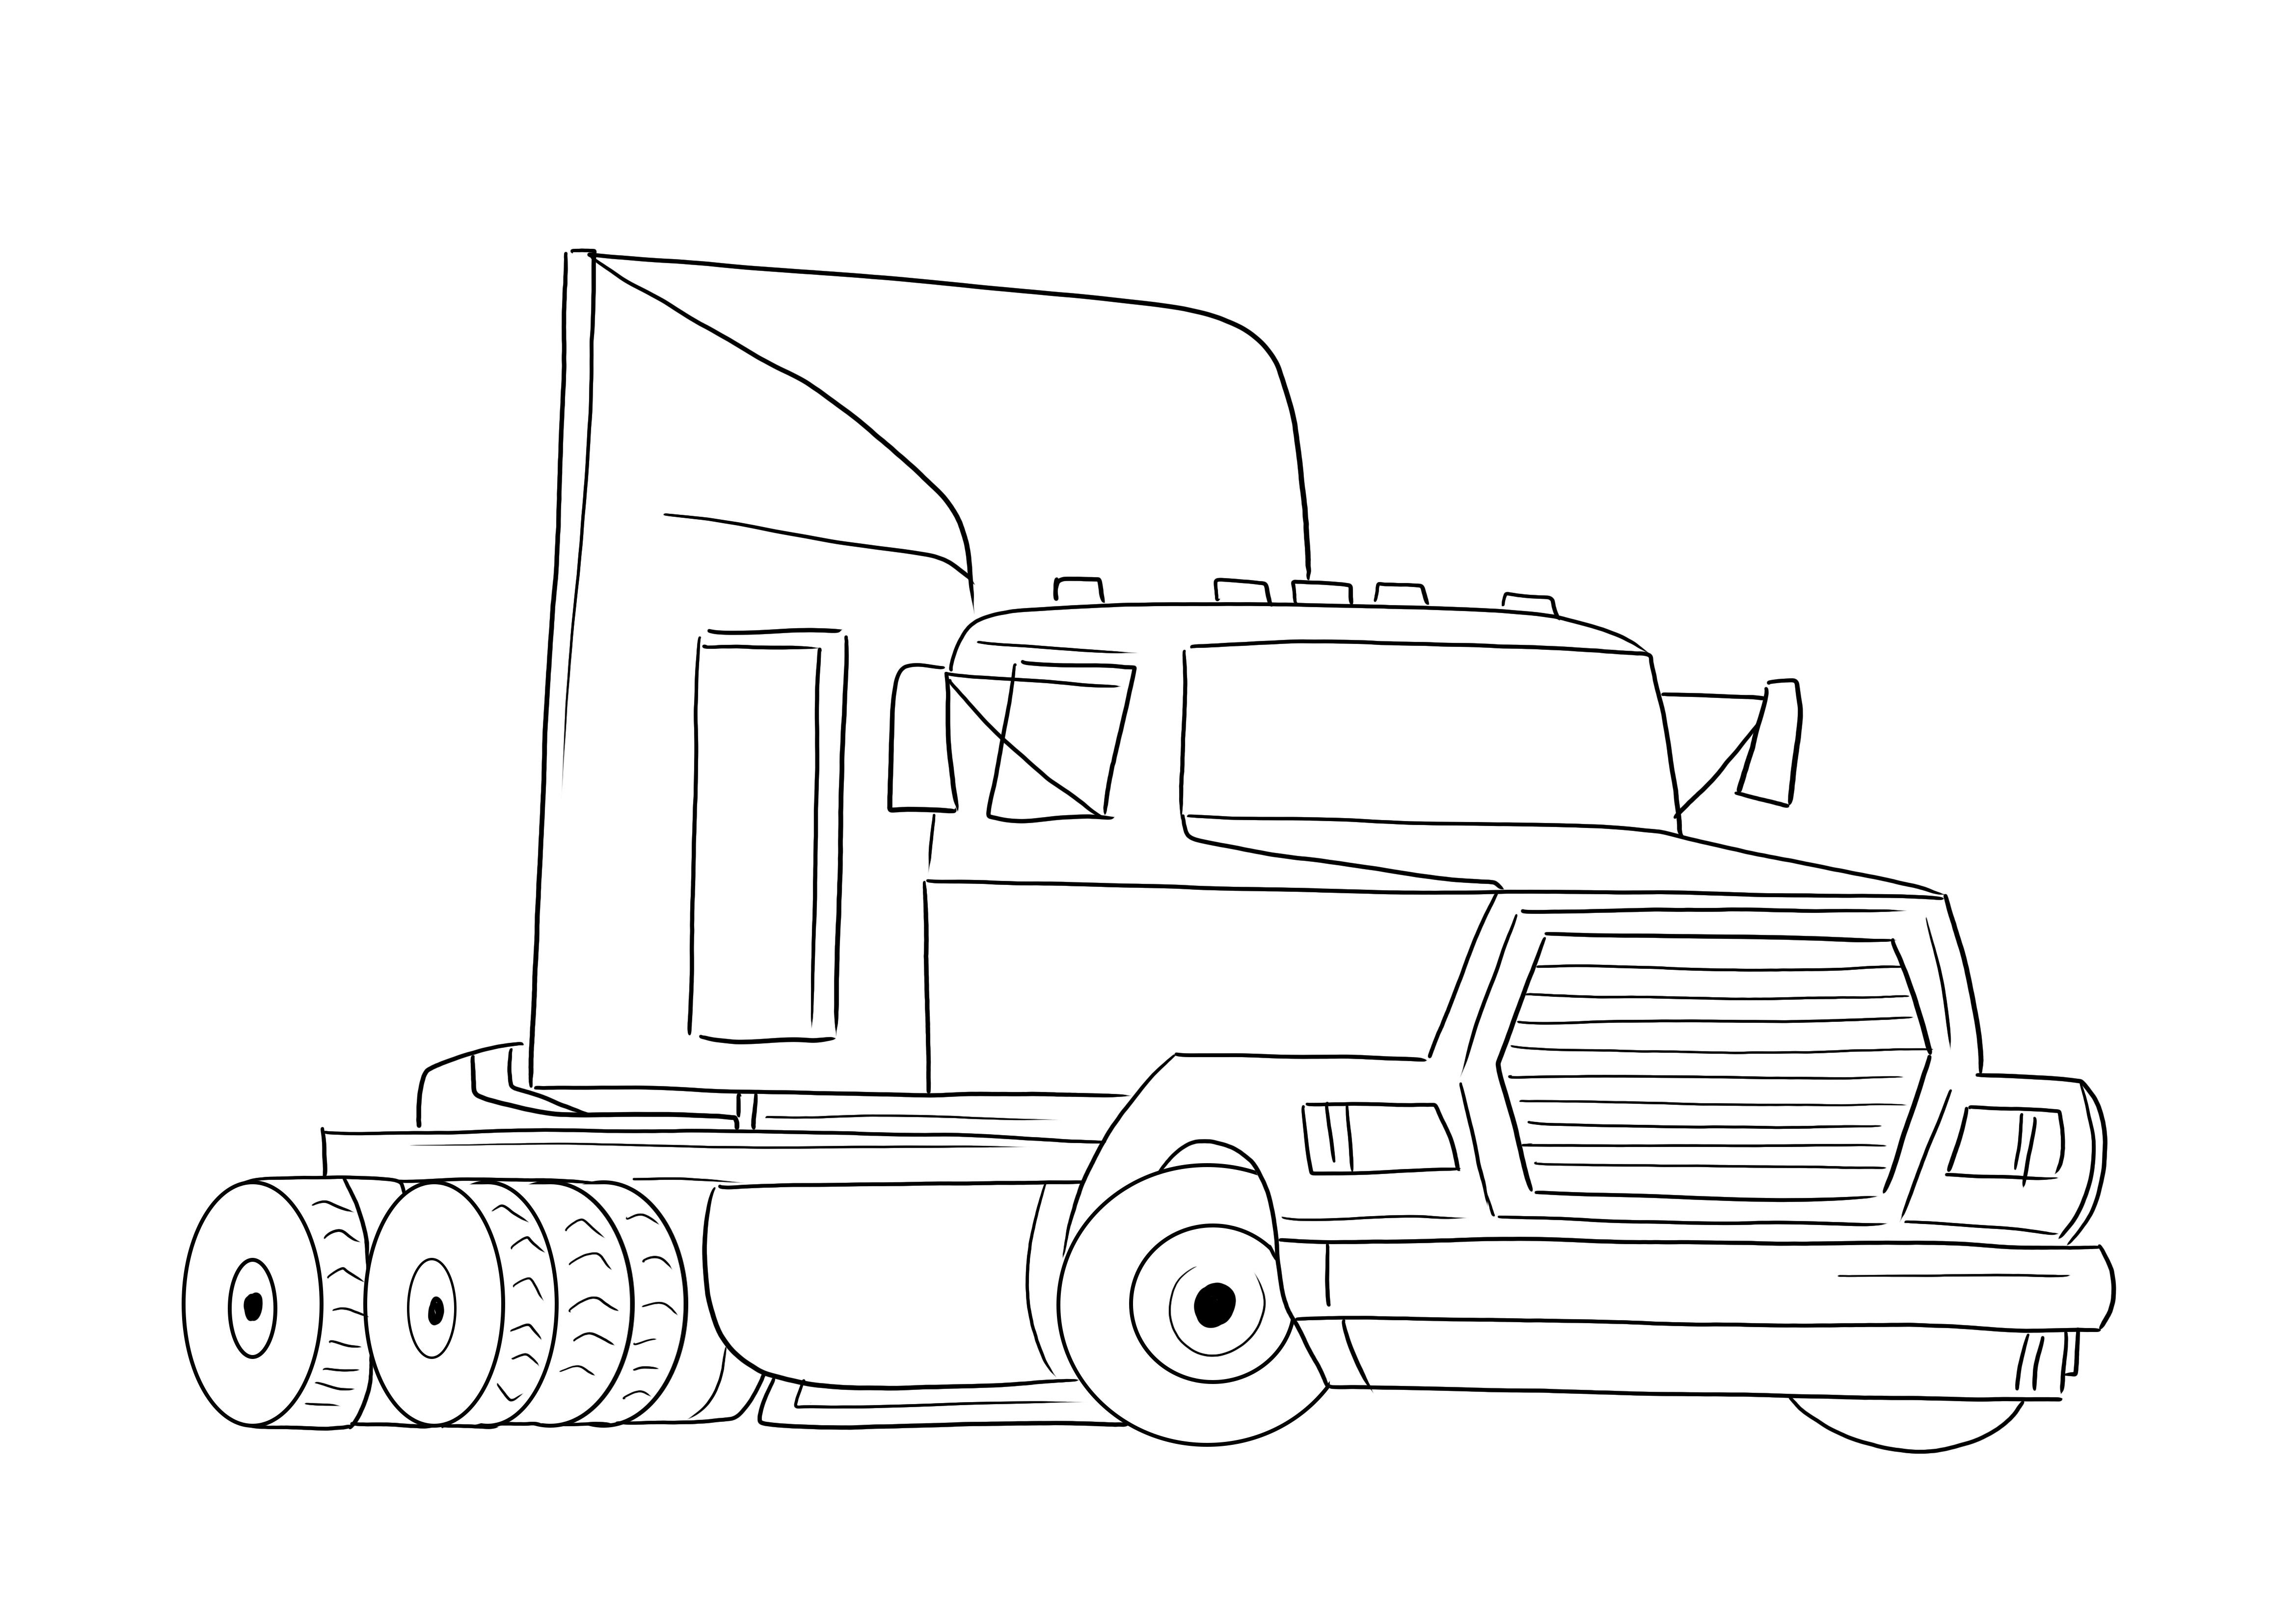 Unduh gratis gambar mewarnai truk Semi-trailer untuk anak-anak